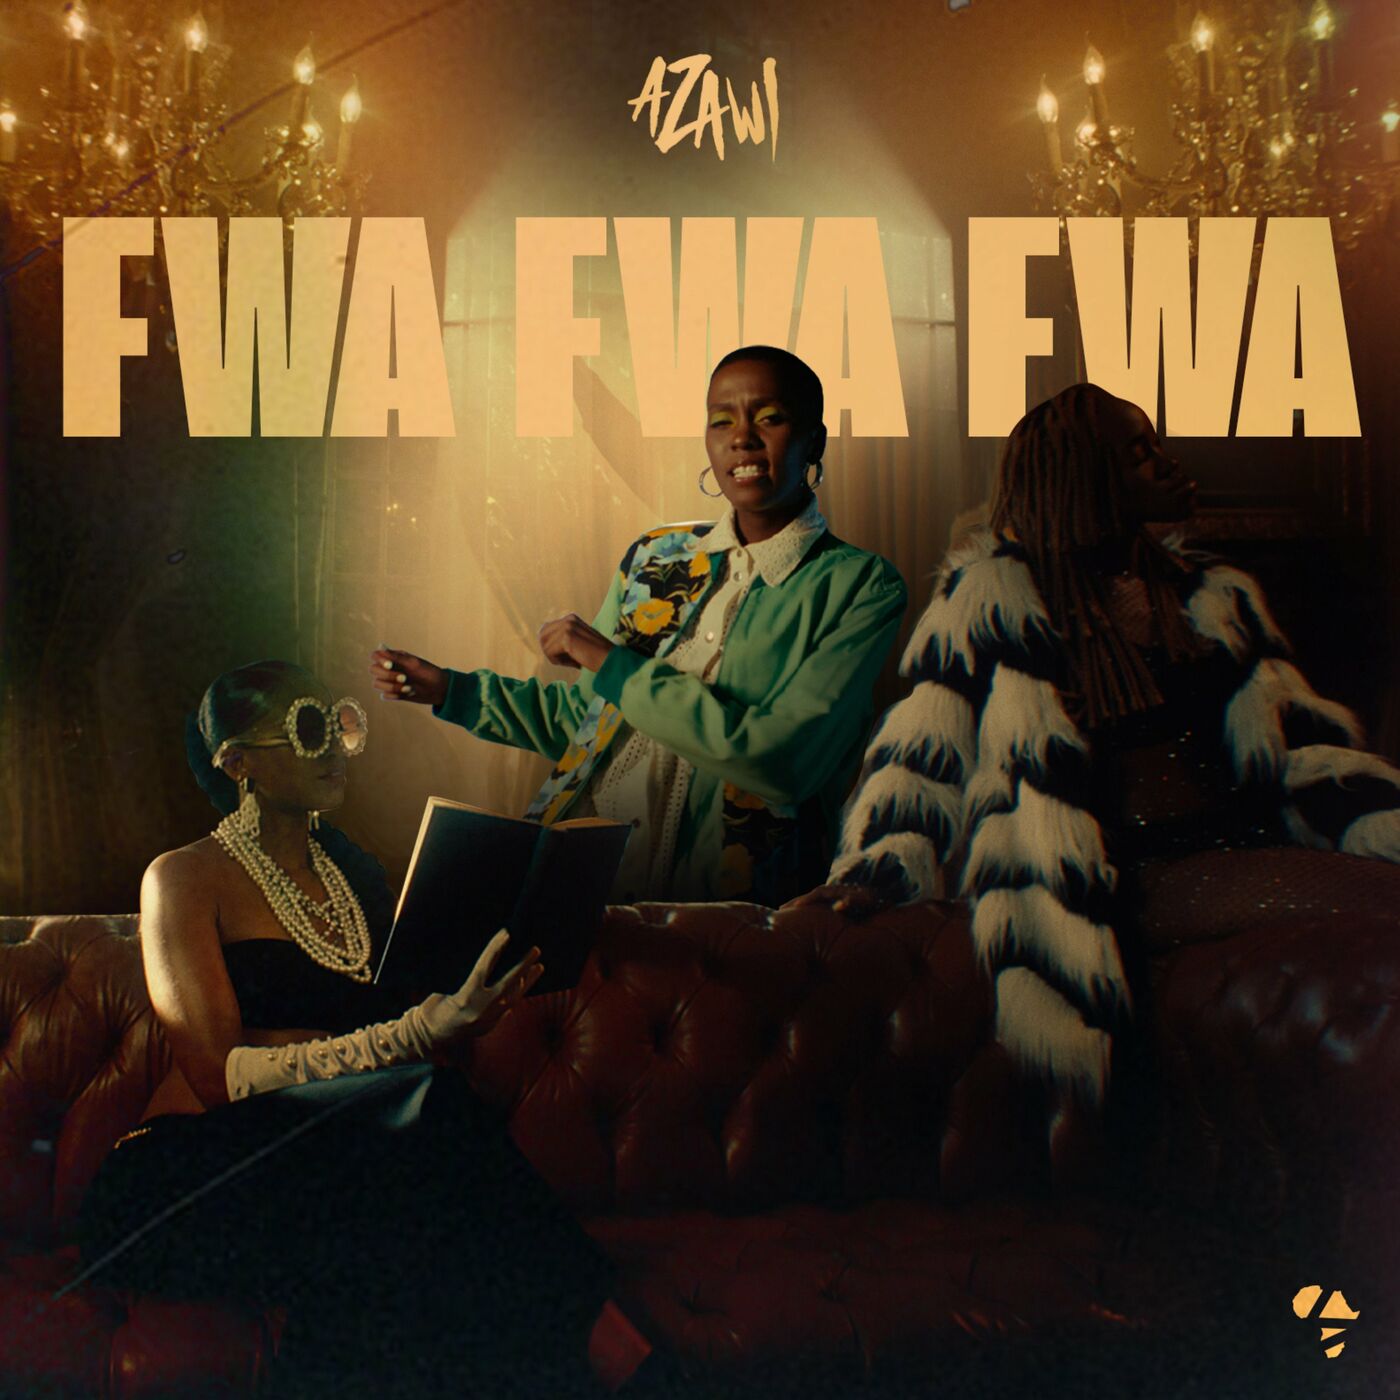 azawi-fwa-fwa-fwa-album-cover